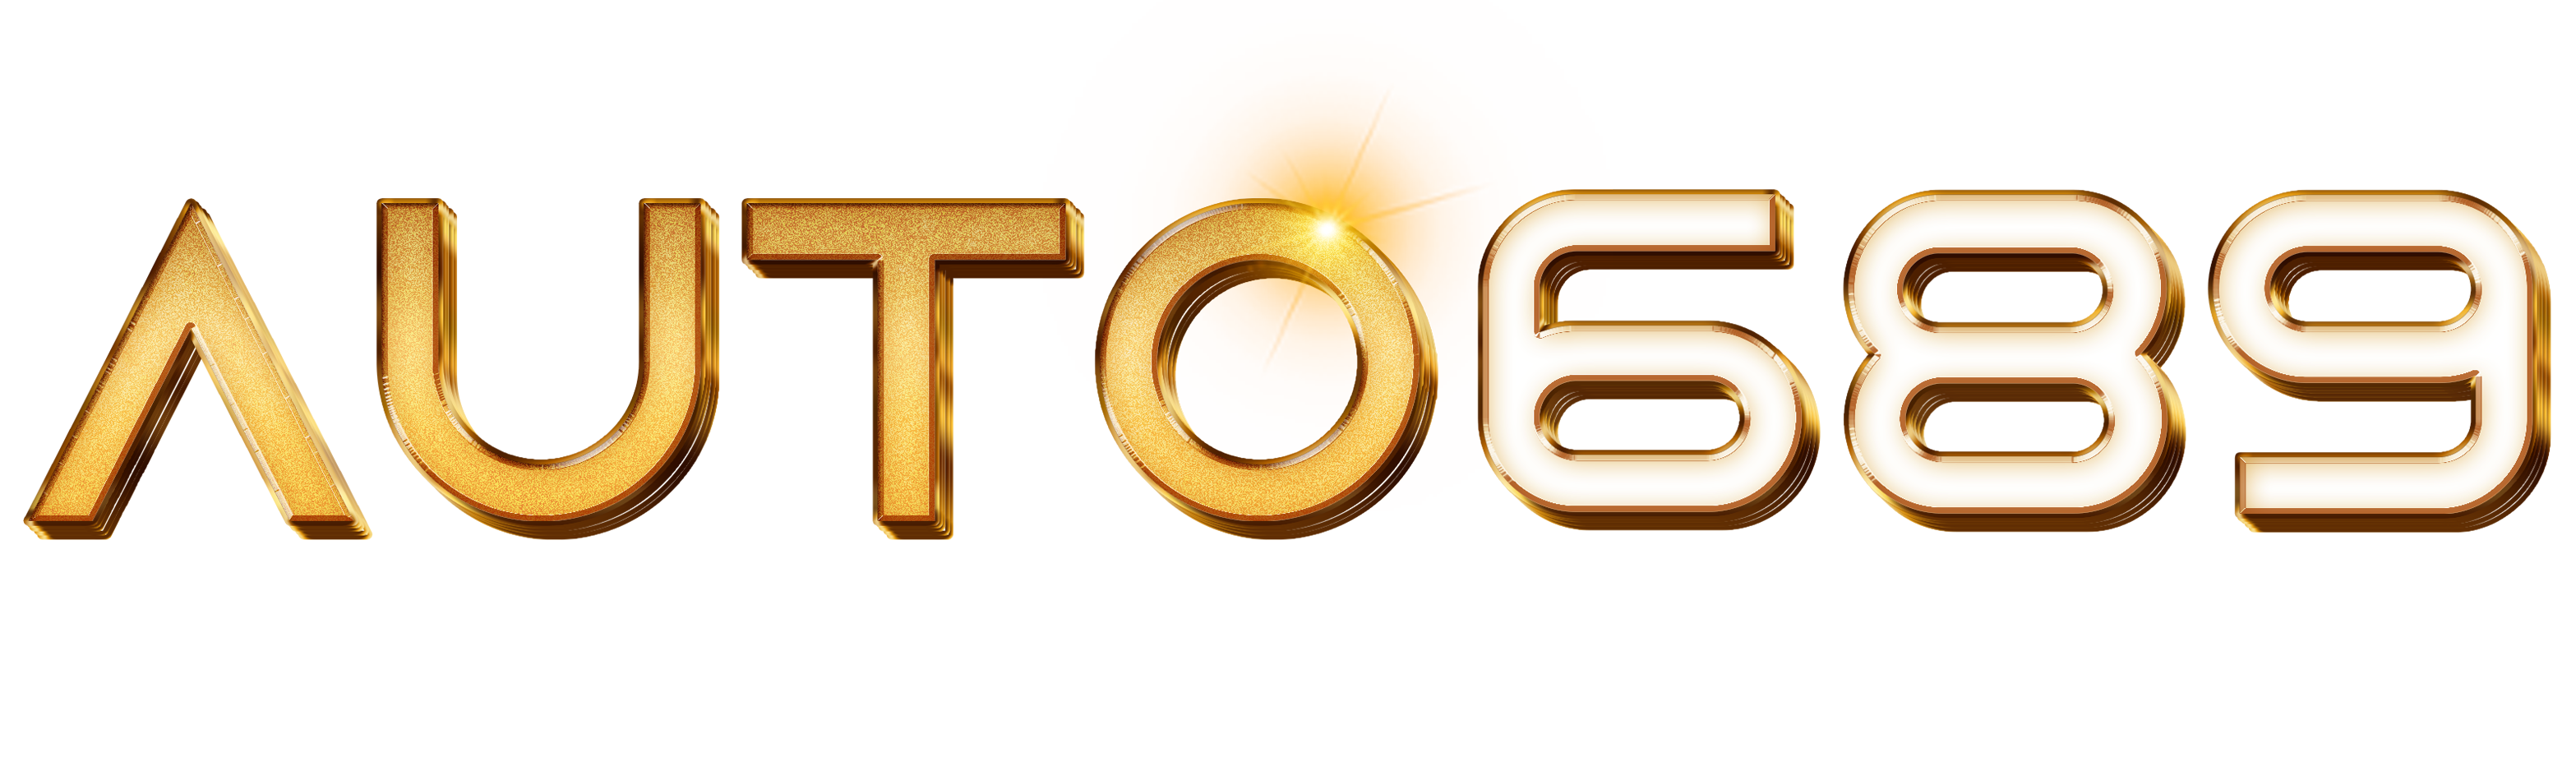 AUTO689 logo text